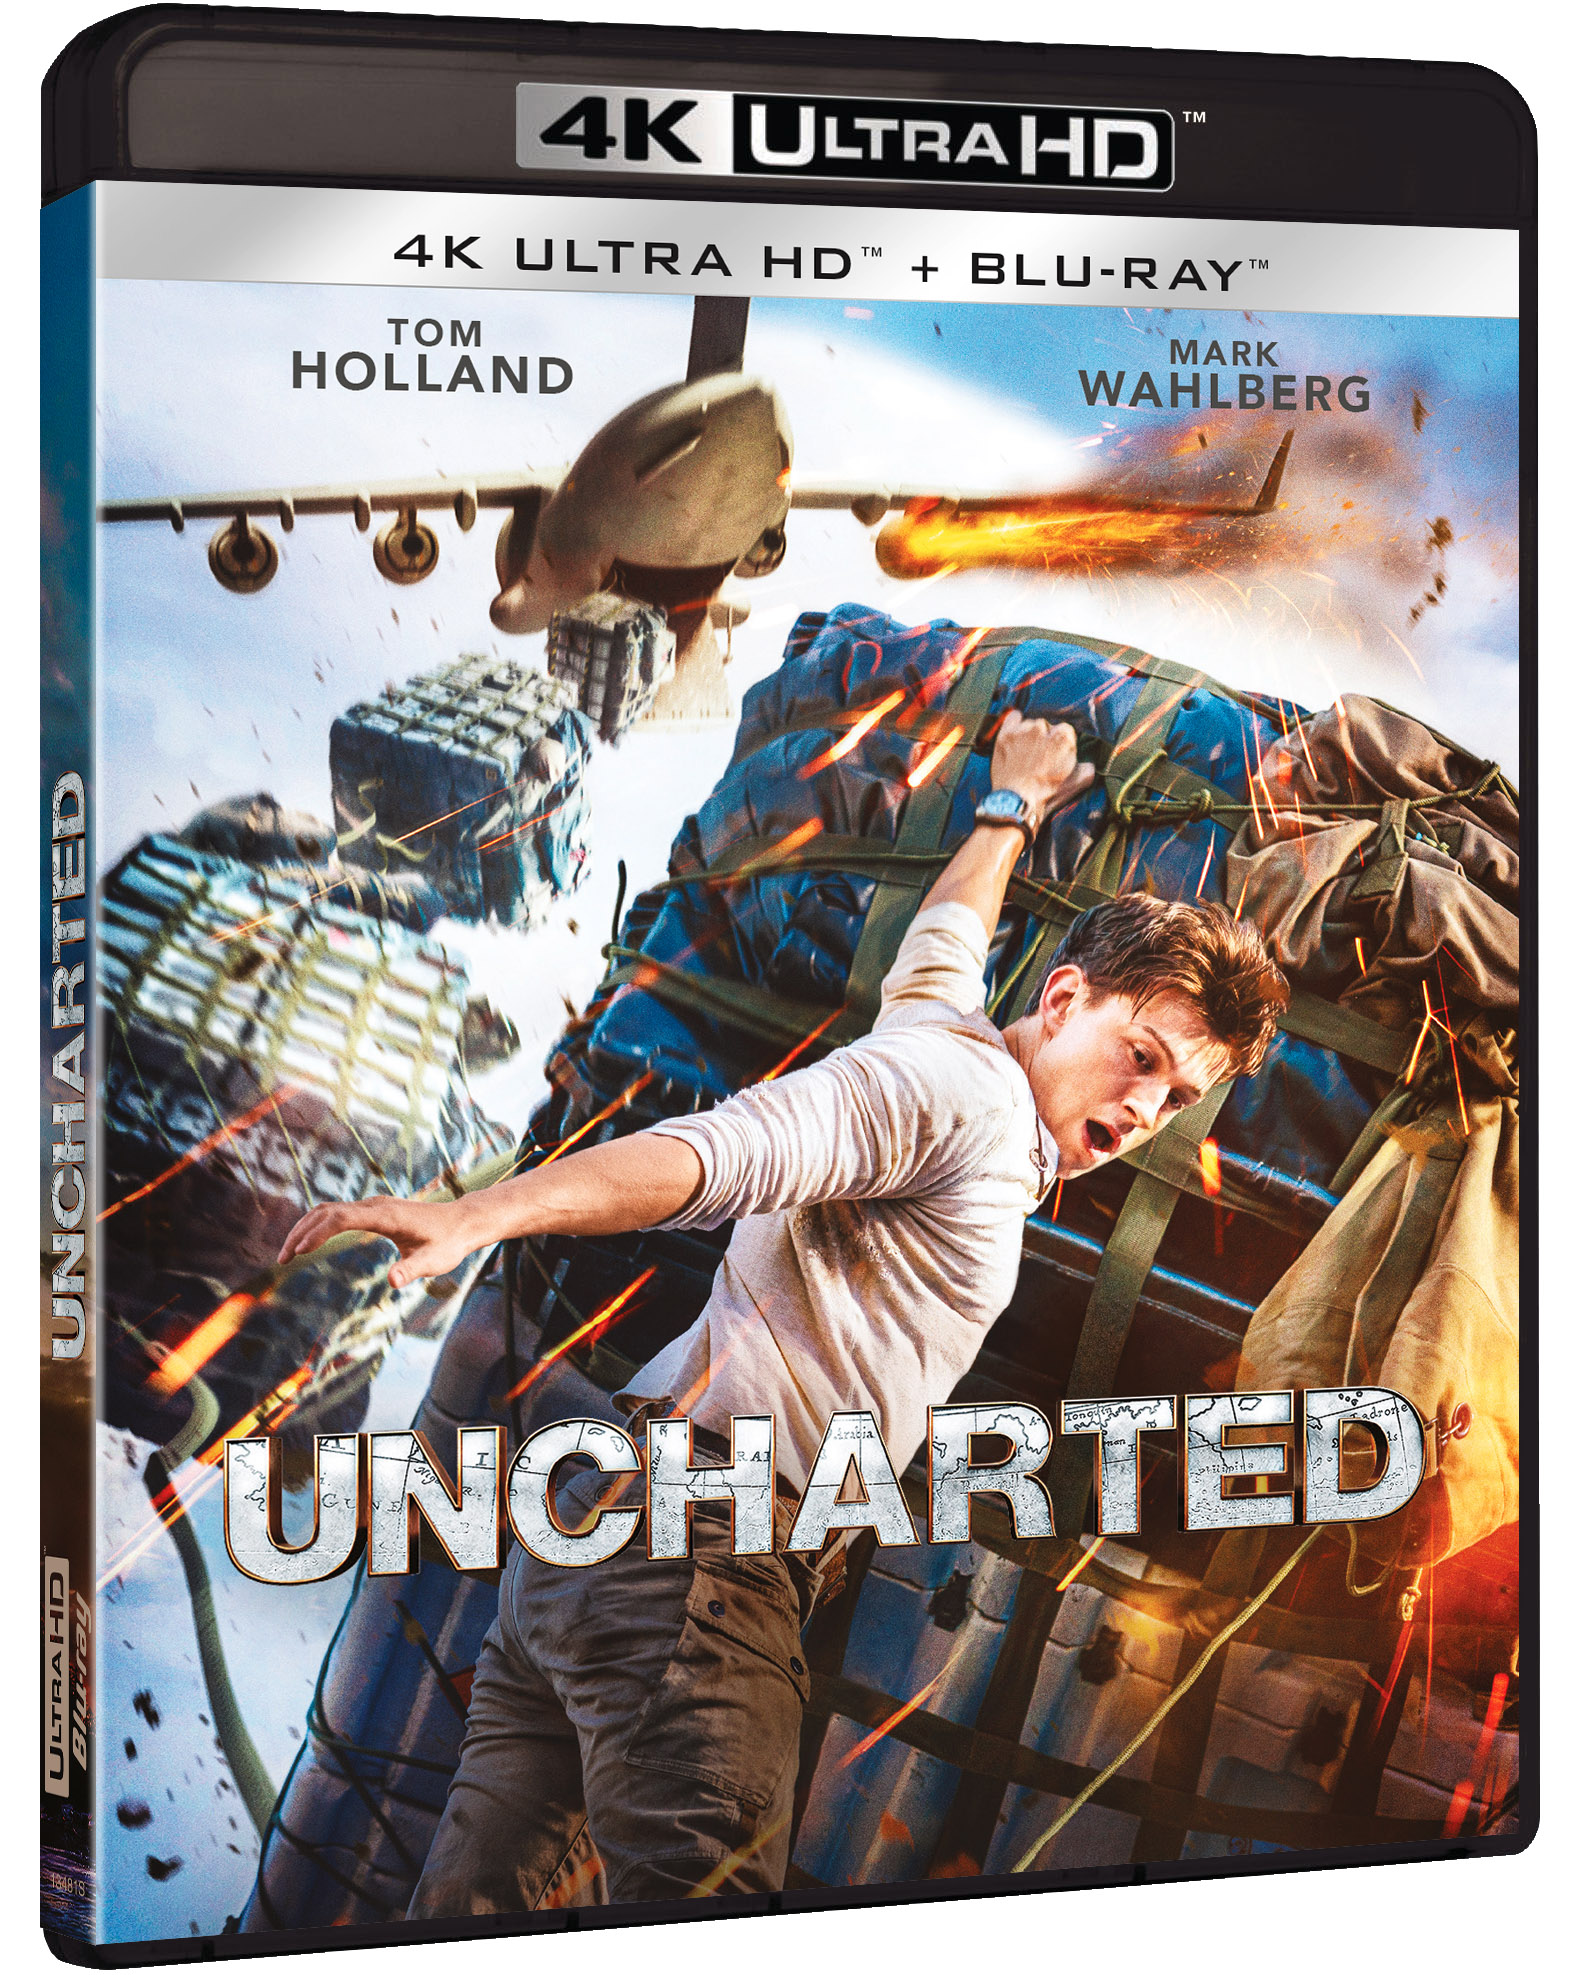 'Uncharted', ya disponible en Blu-ray, DVD, 4K UHD y edición metálica